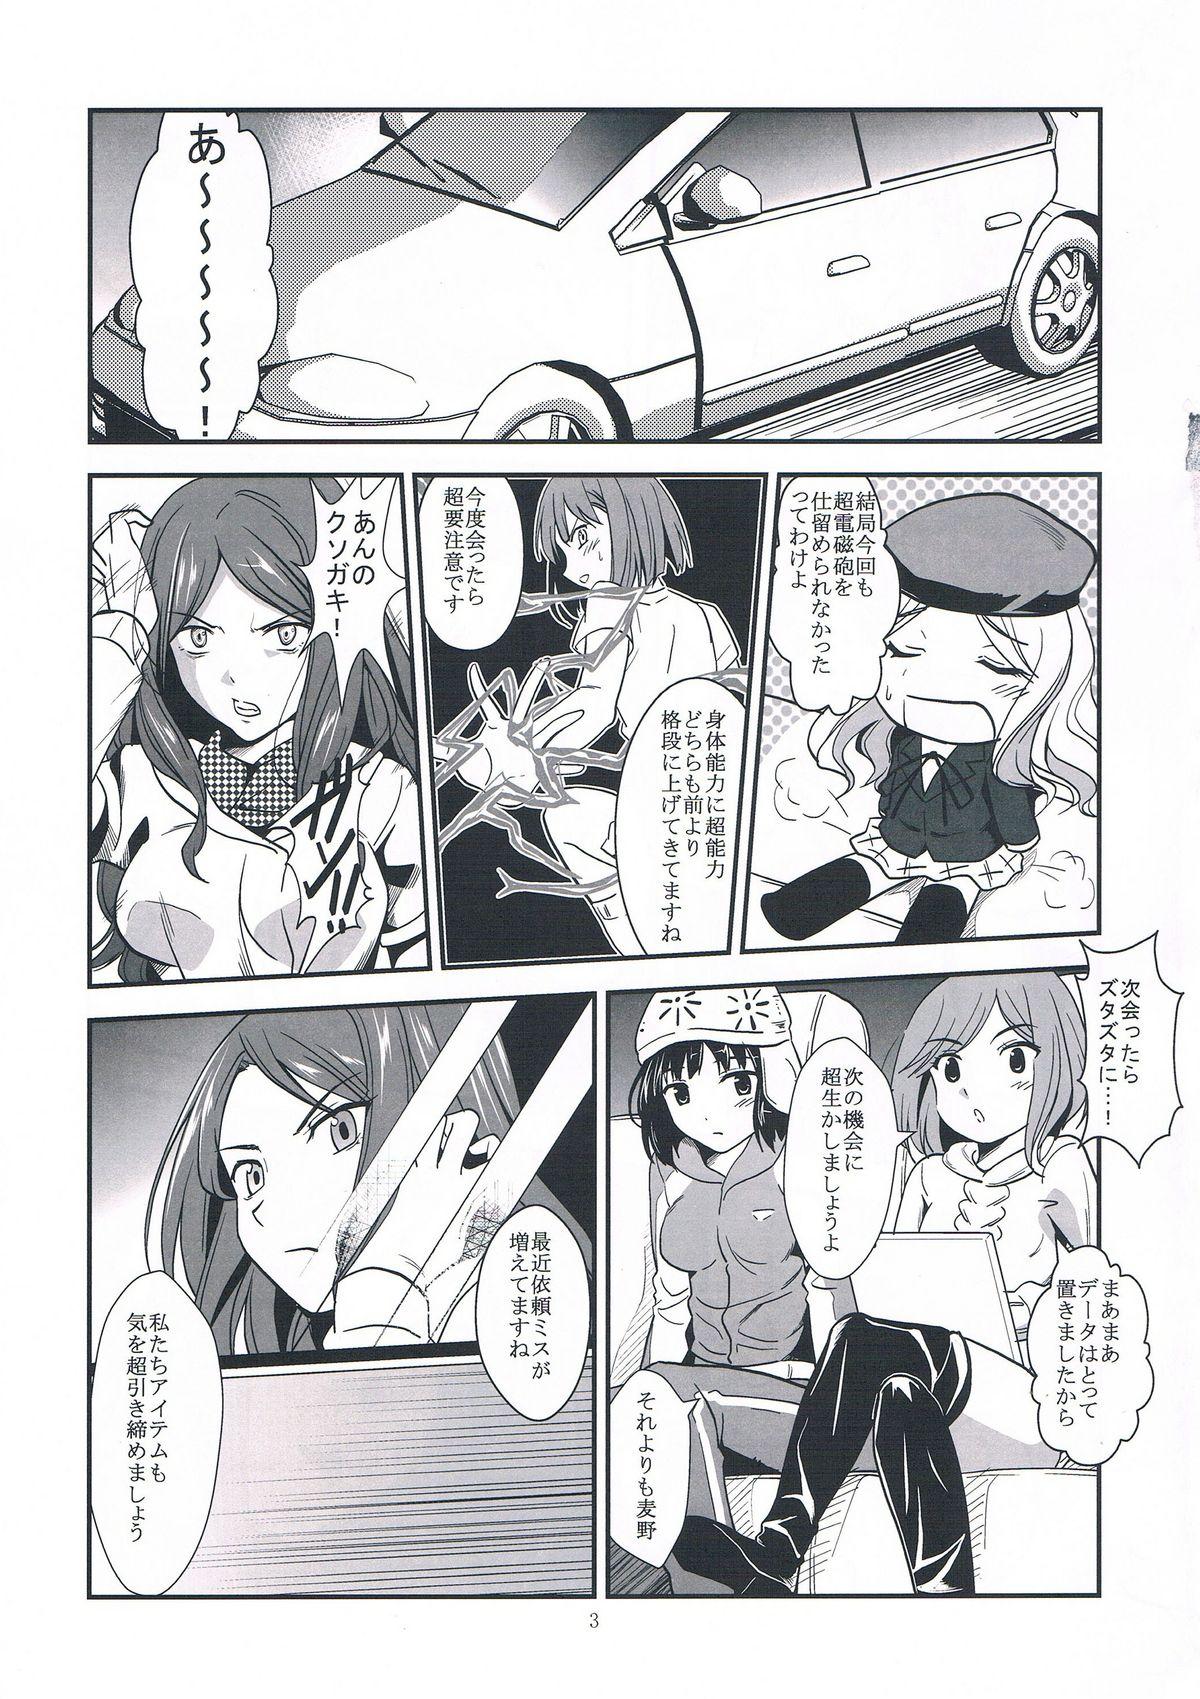 3some Melt Melt Melt - Toaru kagaku no railgun Toaru majutsu no index Facials - Page 7